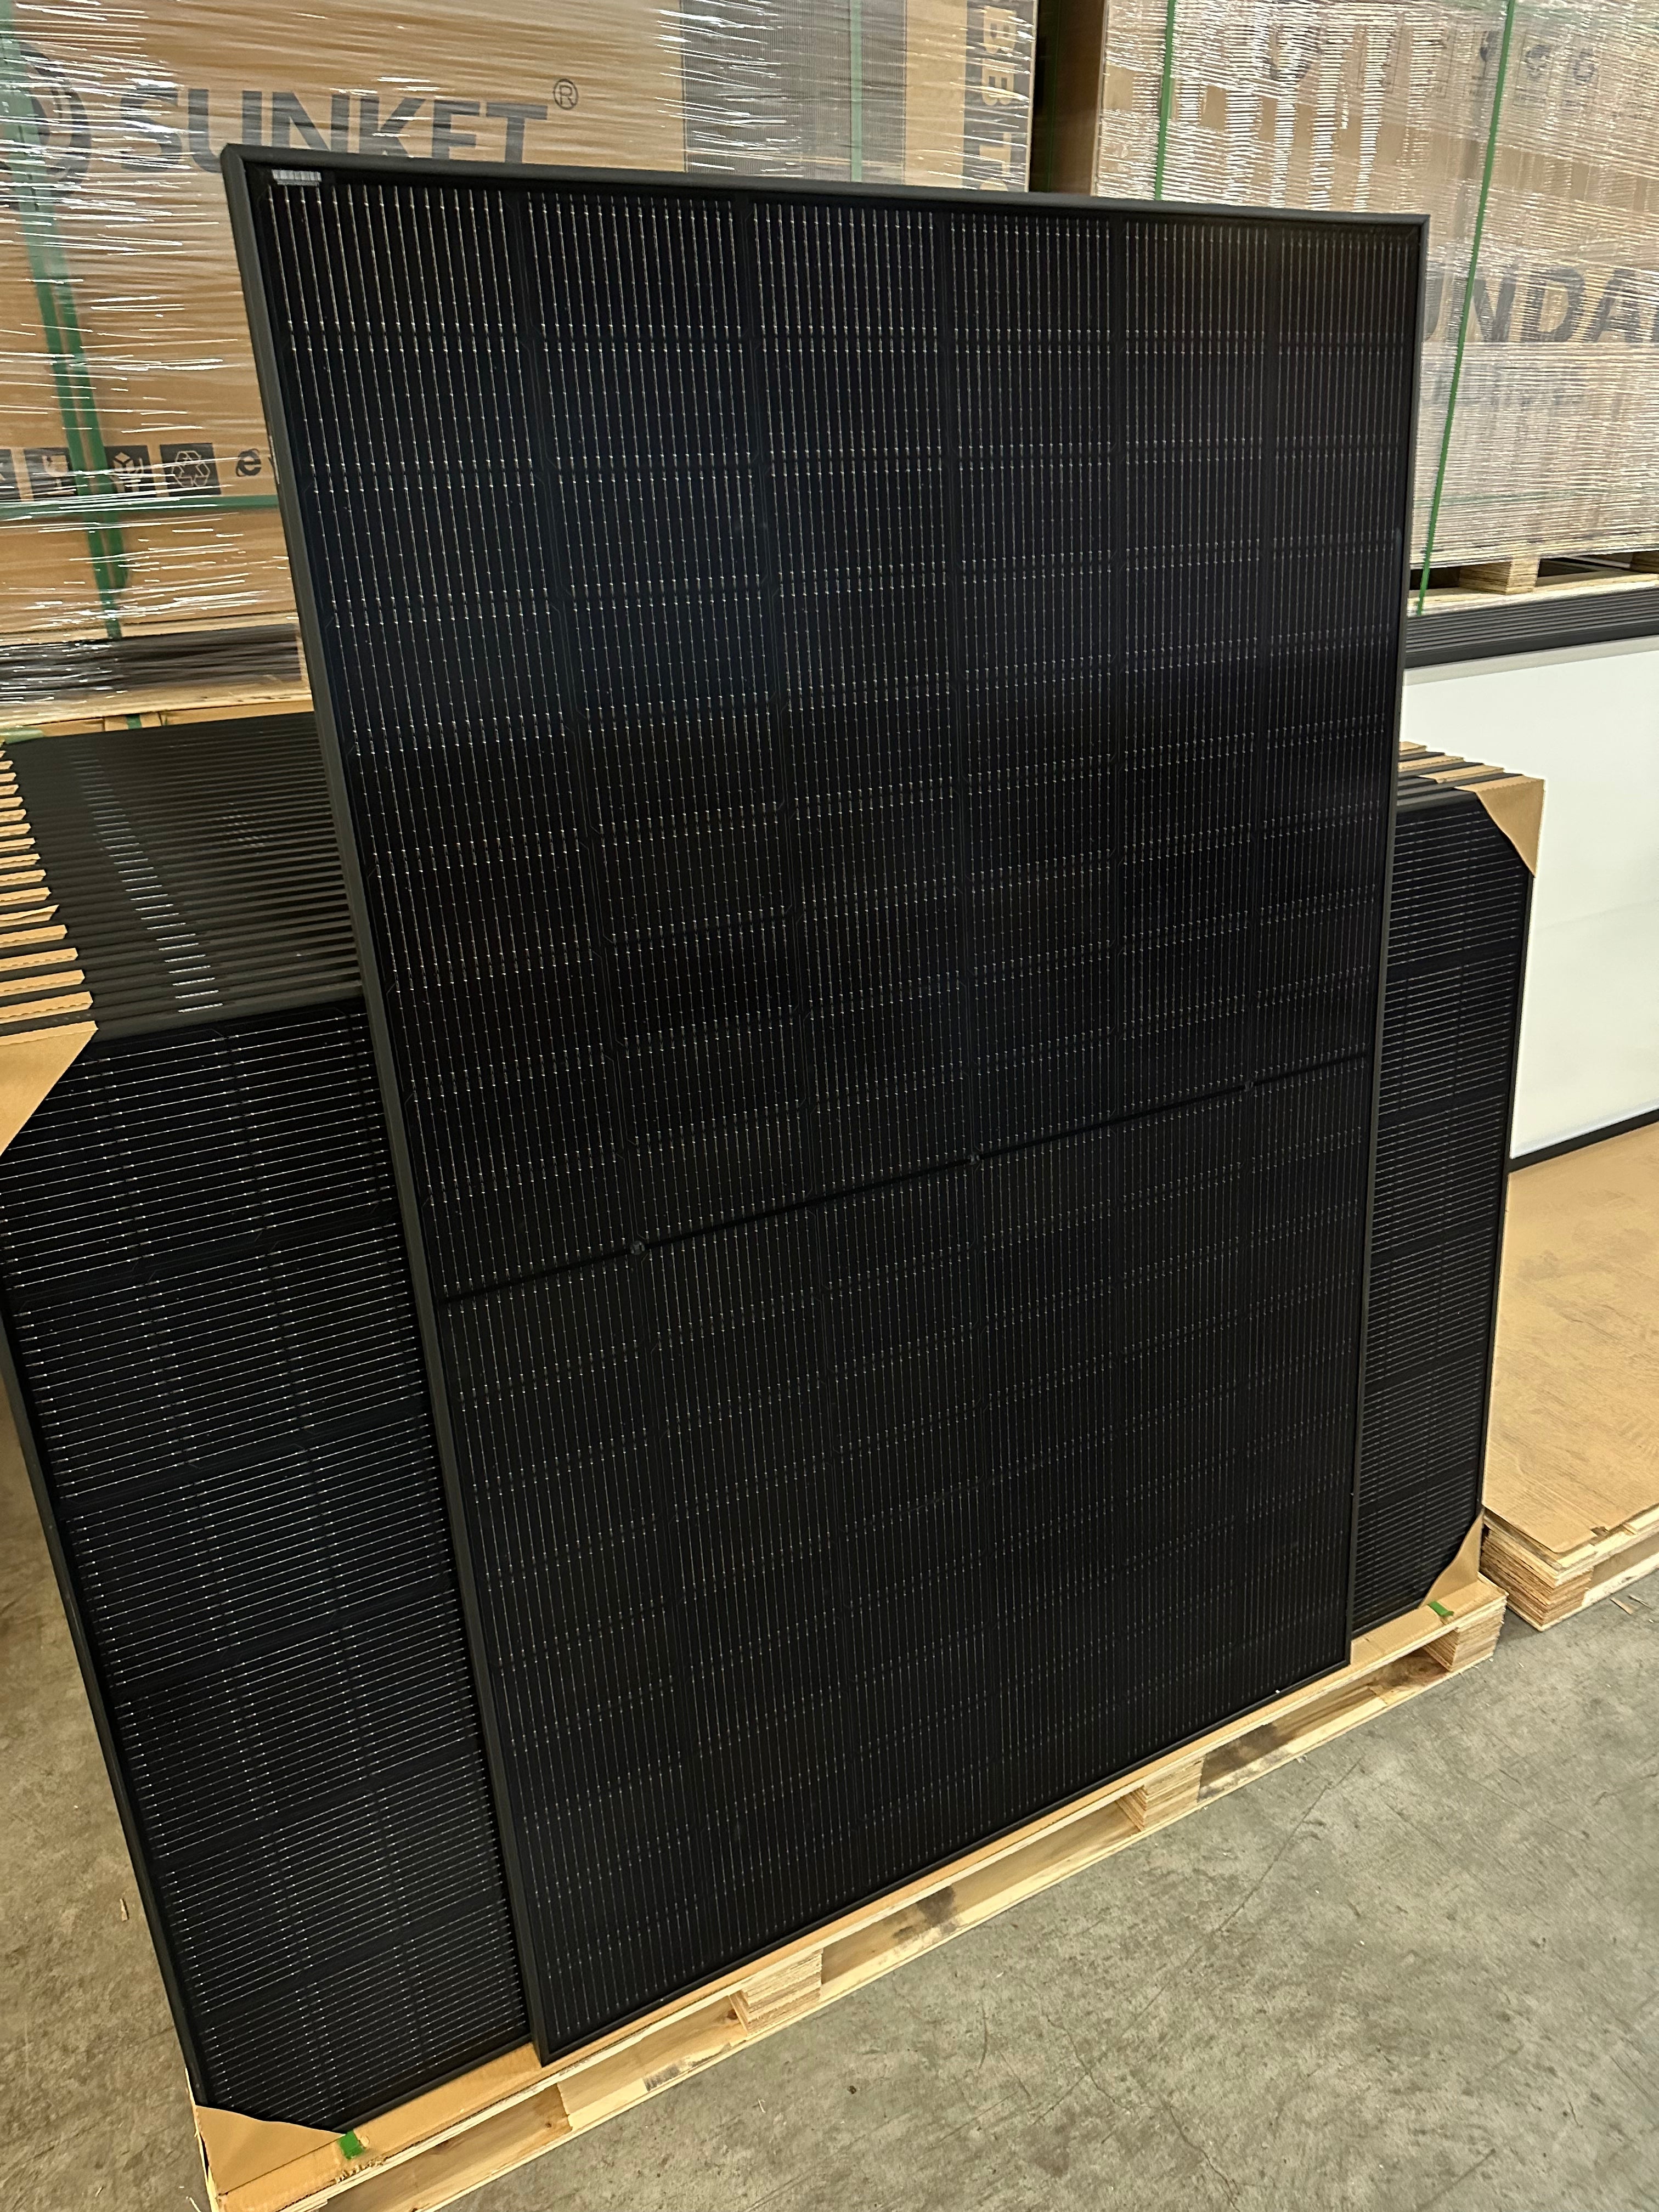 430W SUNKET TOPCon bifacial N-type solar modules 1722x1134x30 photovoltaic solar panel